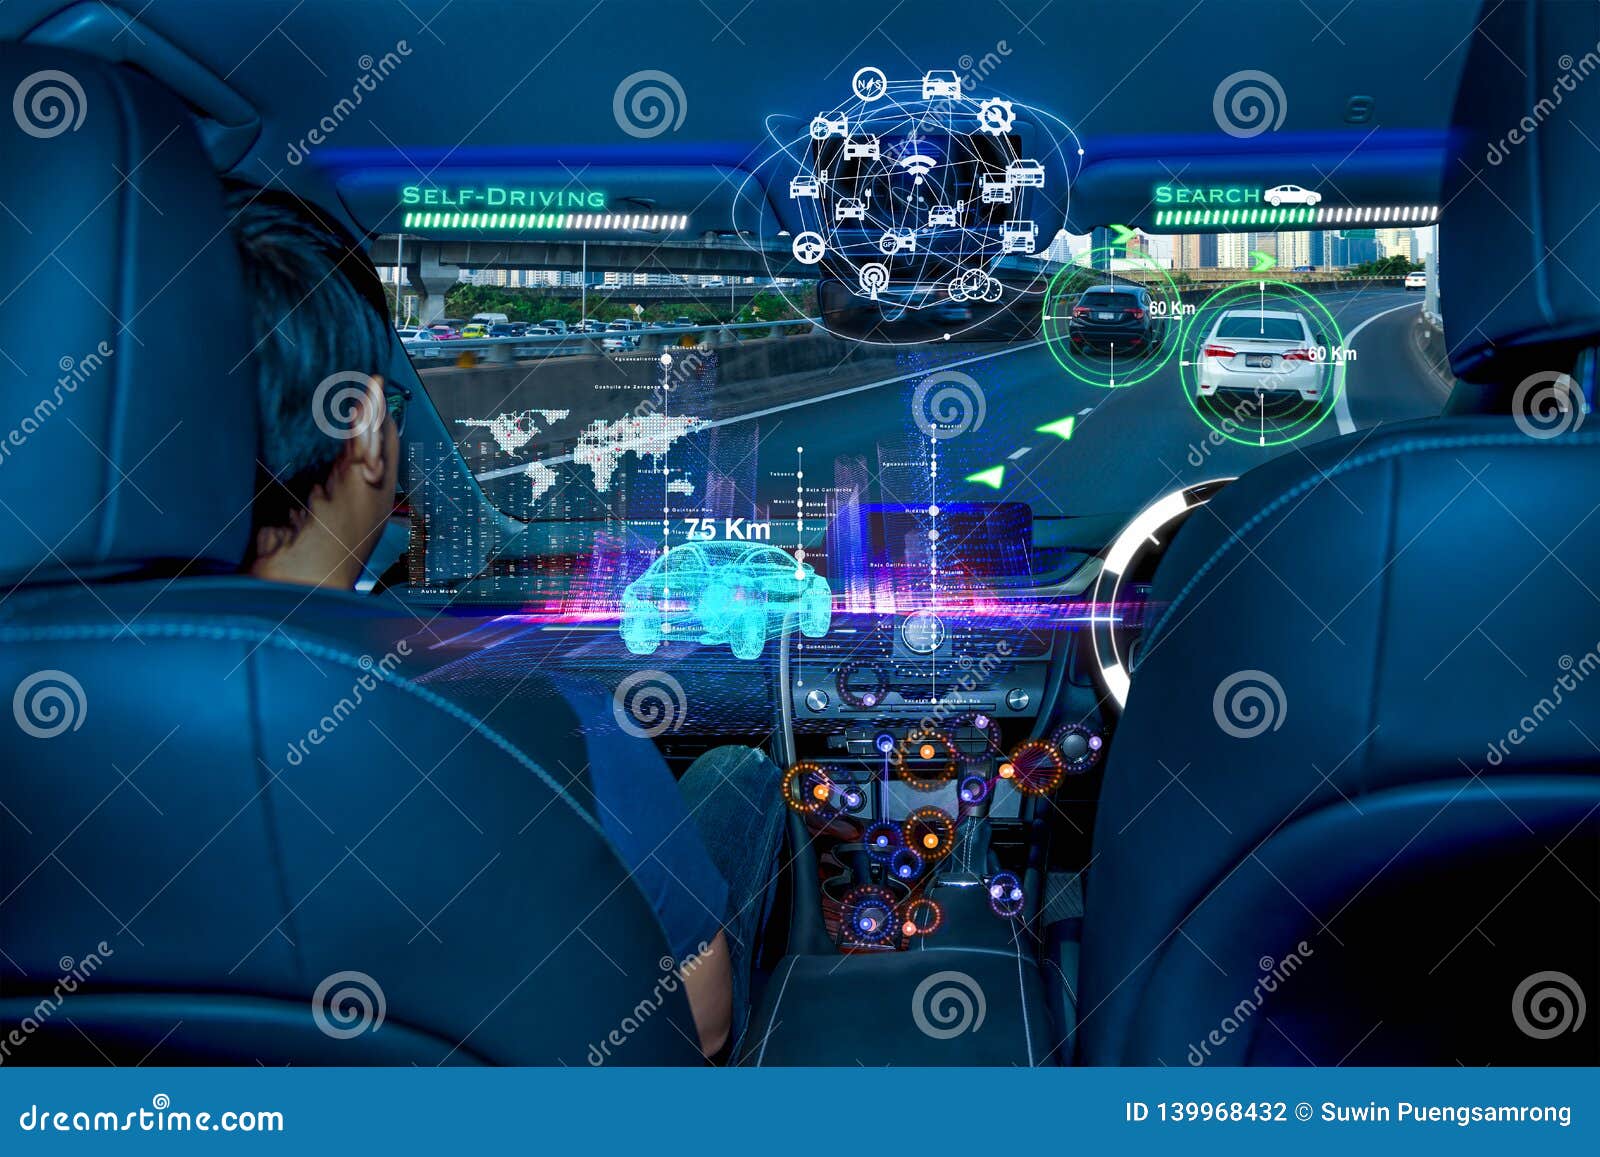 autonomous car with passengers, future technology smart car concept